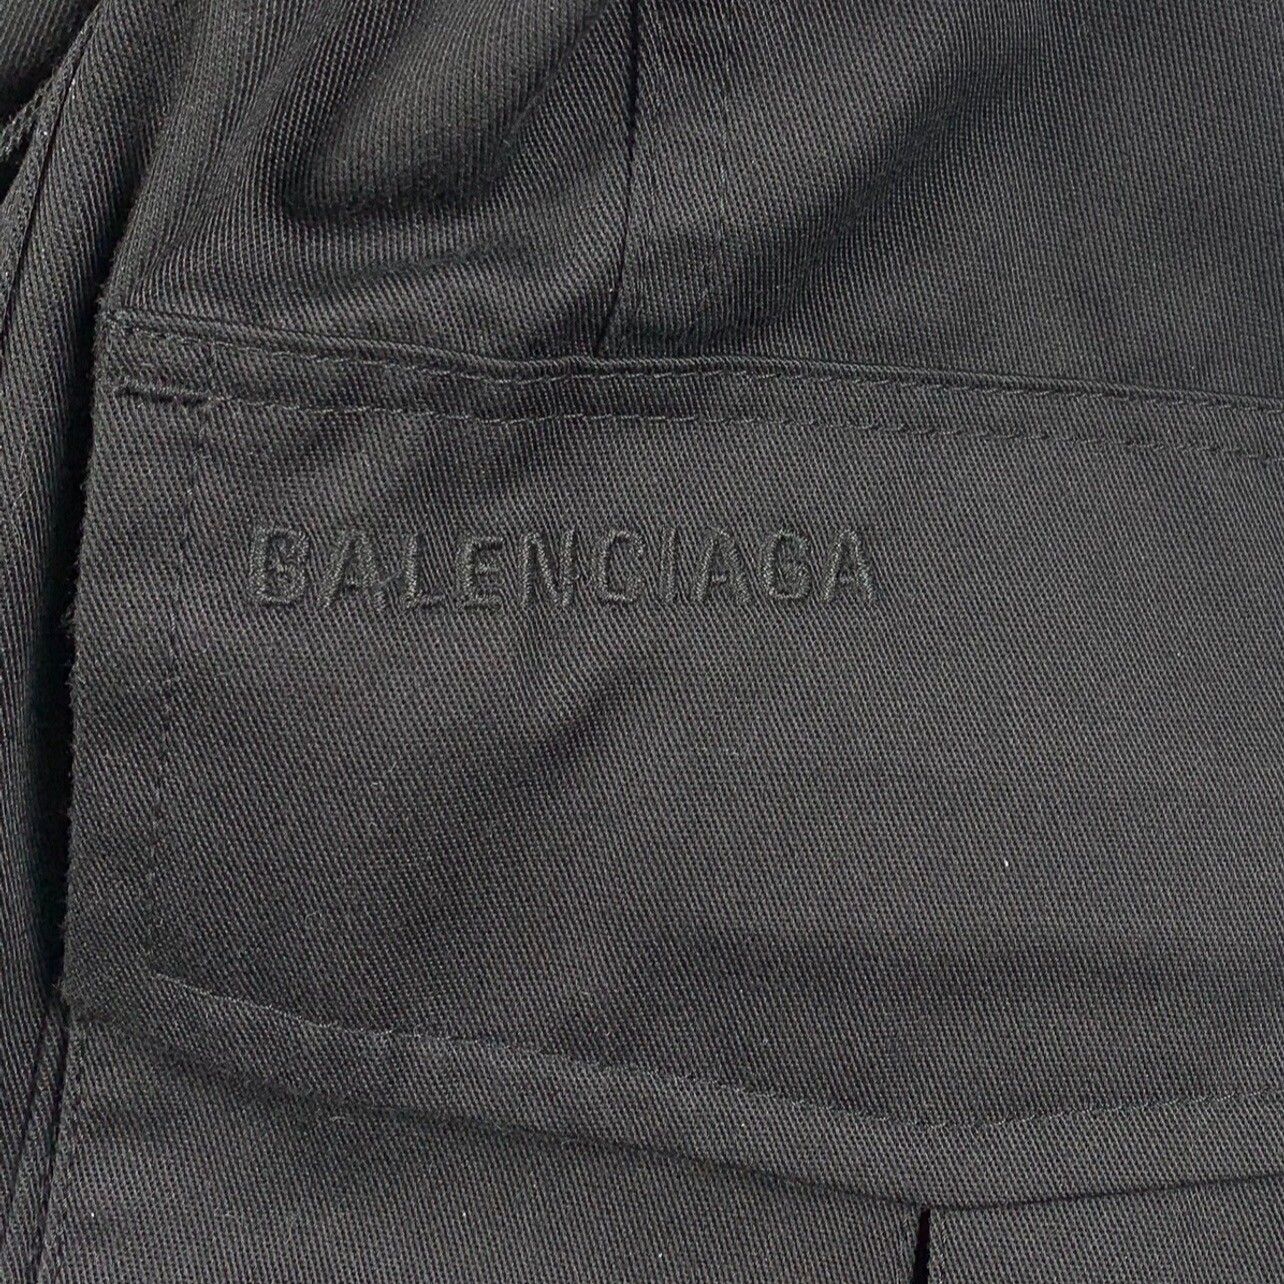 Balenciaga Balenciaga Multi-Pocket Cargo Pants Size US 34 / EU 50 - 2 Preview